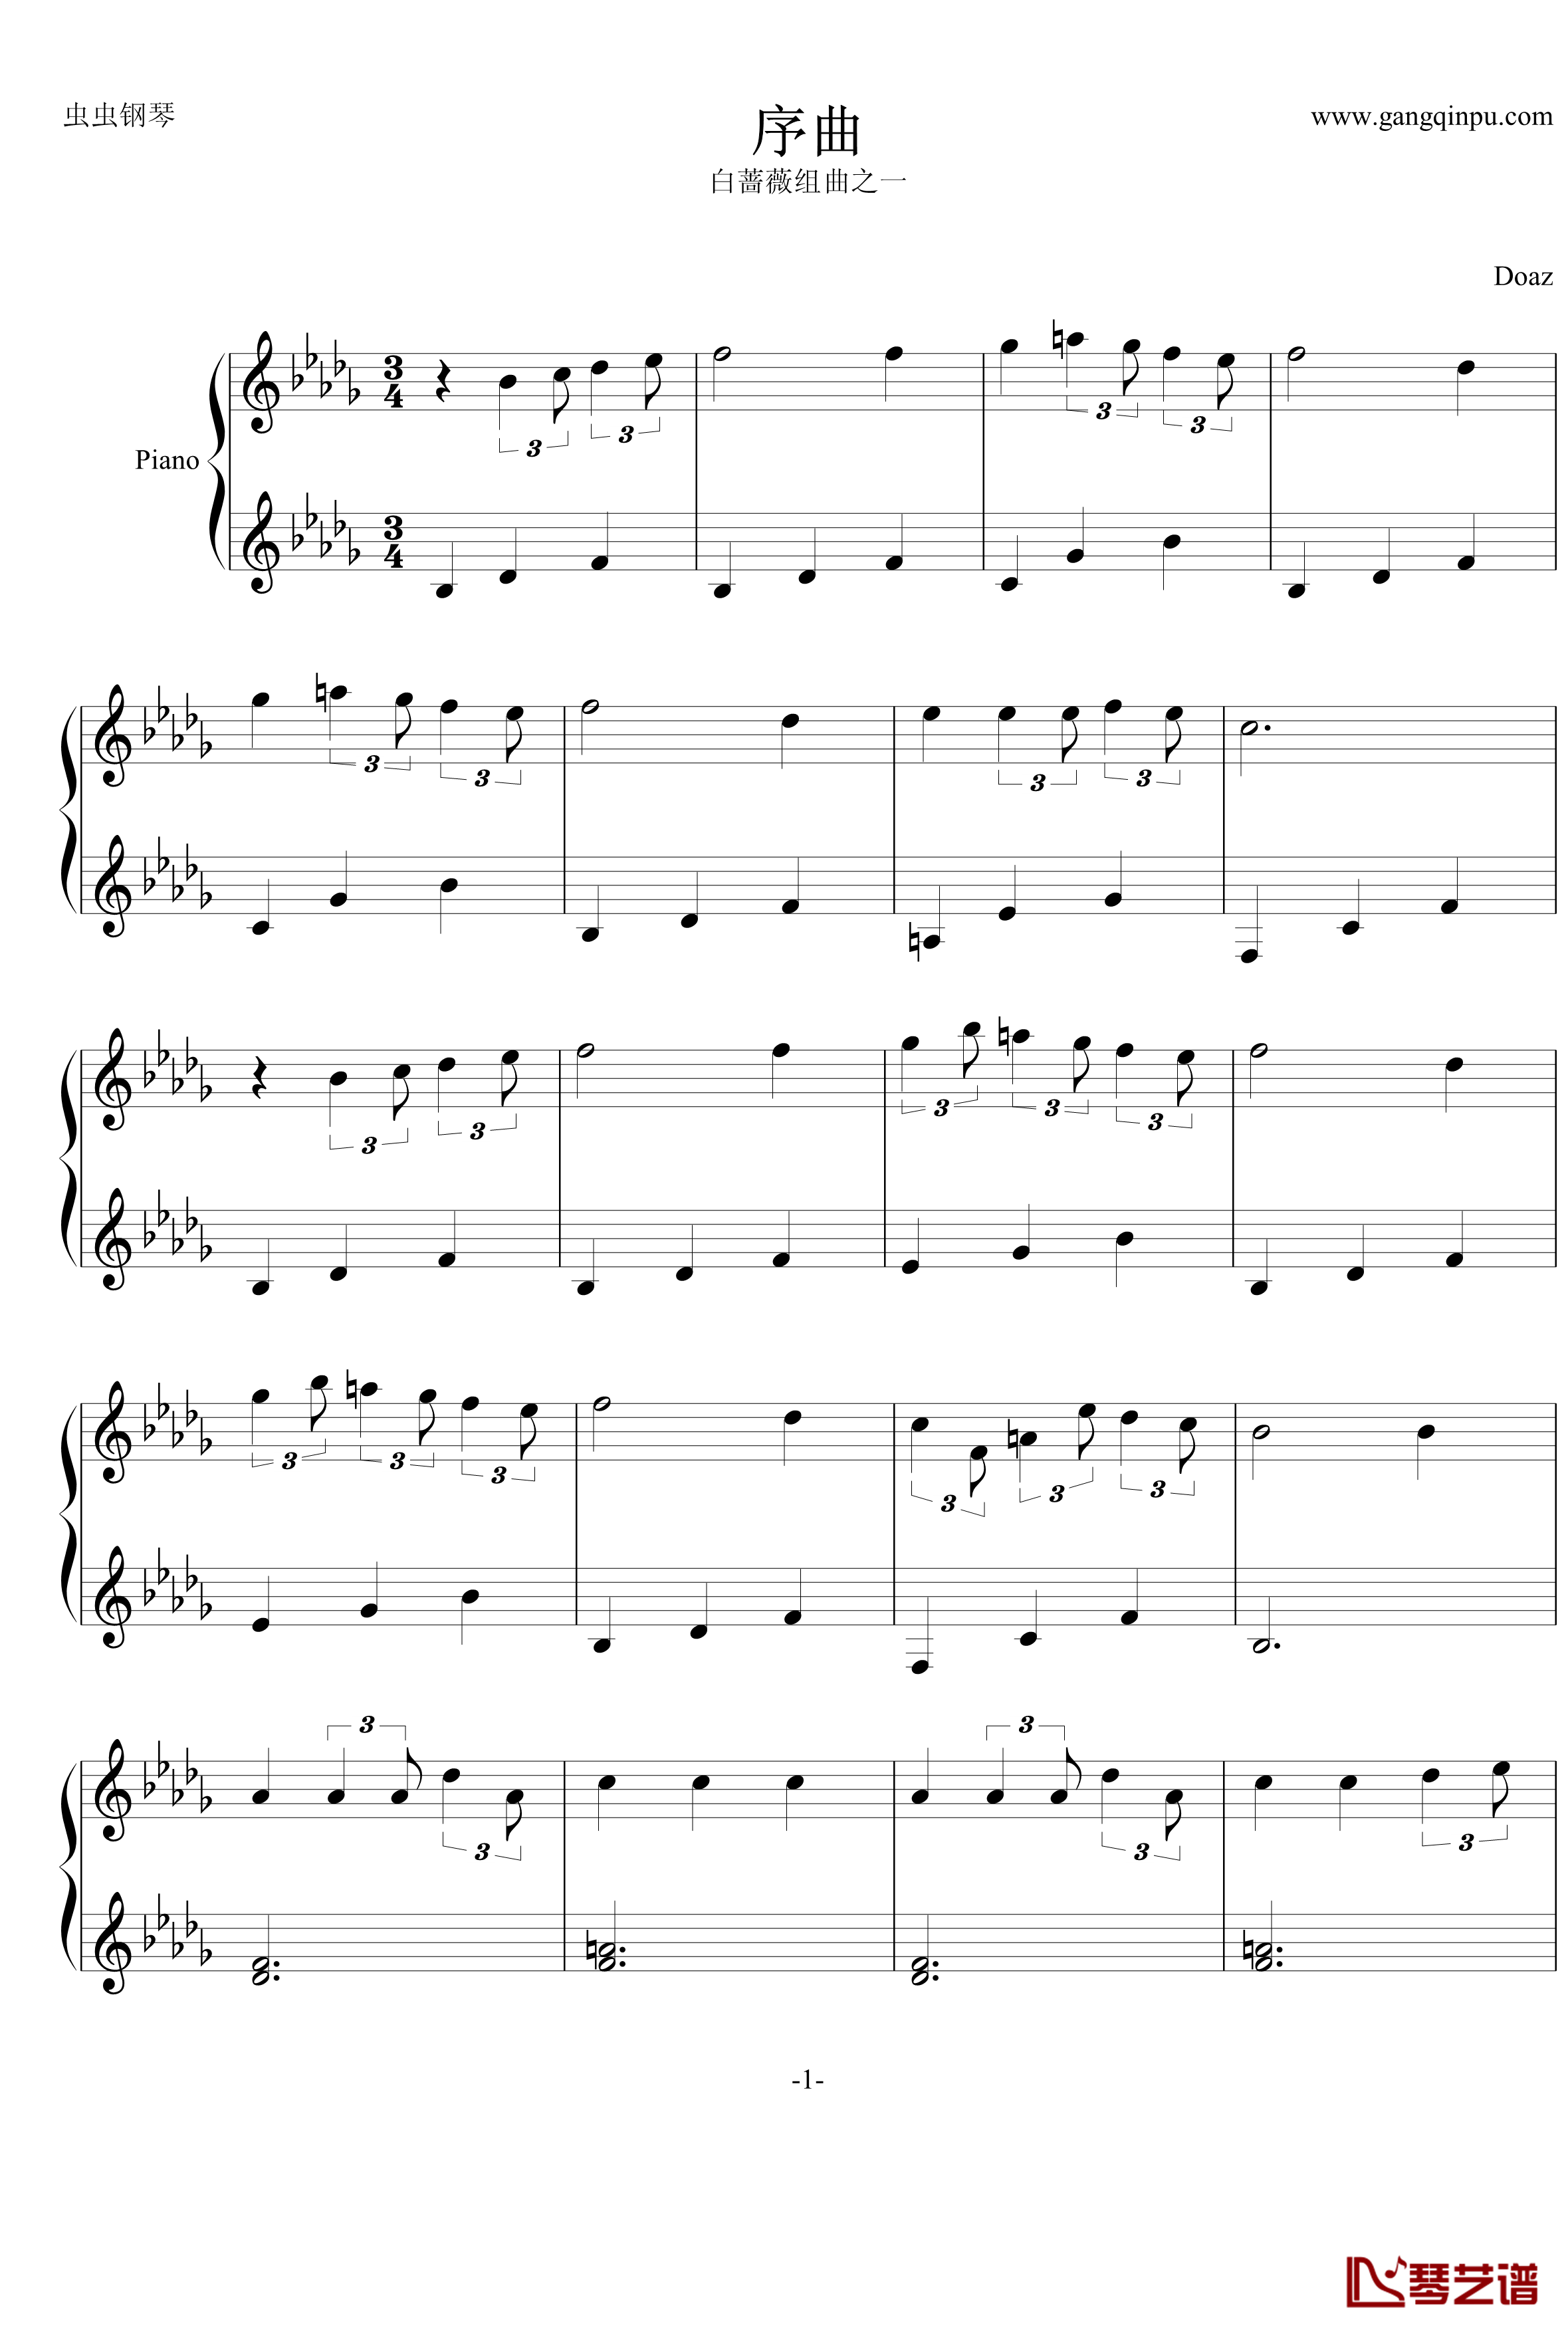 白蔷薇组曲⒈序曲钢琴谱-aqtq3141